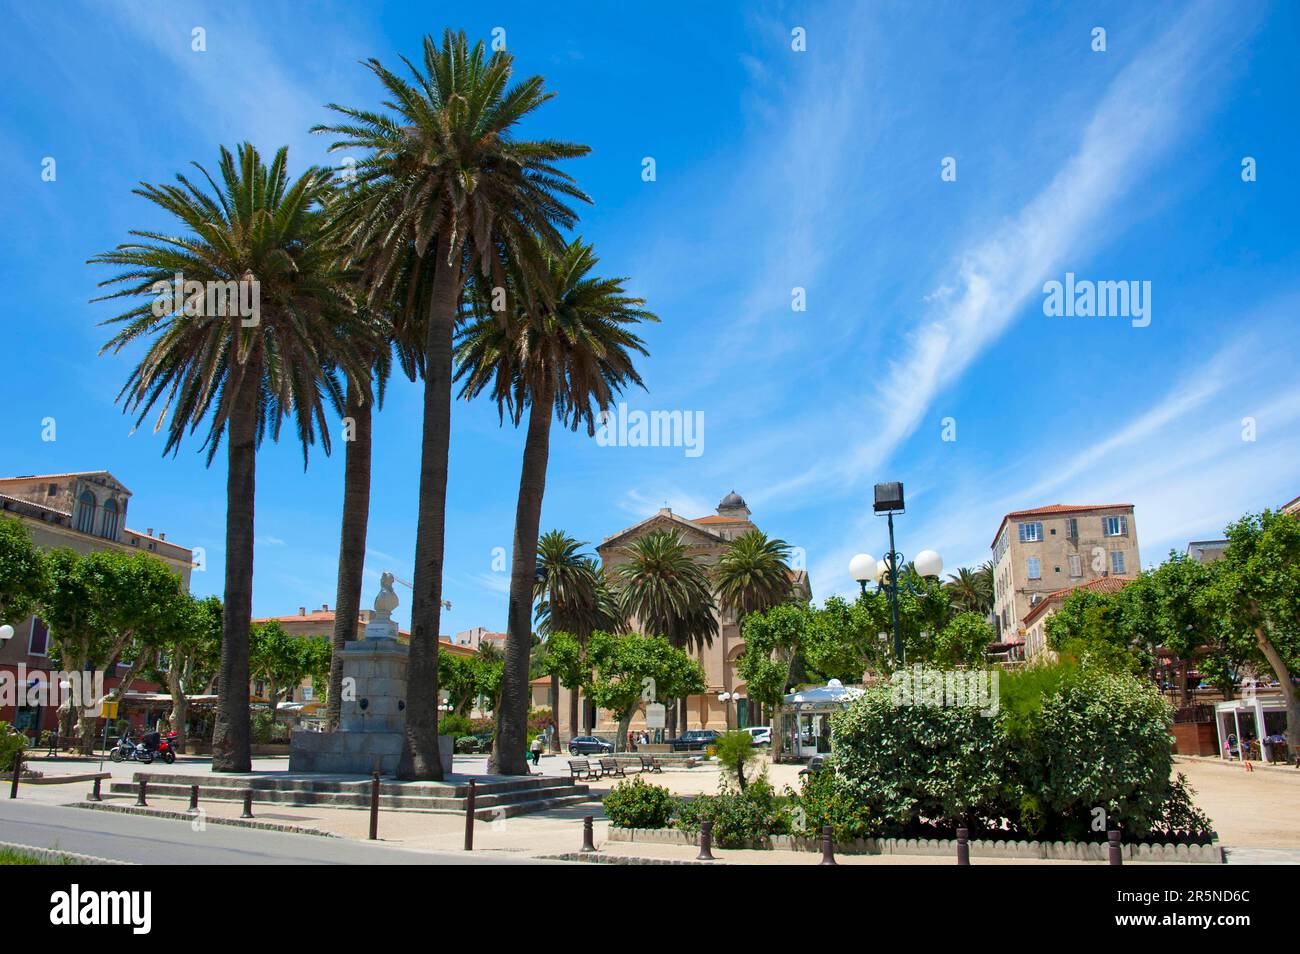 Piazza del mercato, Place Paoli, l'Ile-Rousse, Corsica, Francia Foto Stock